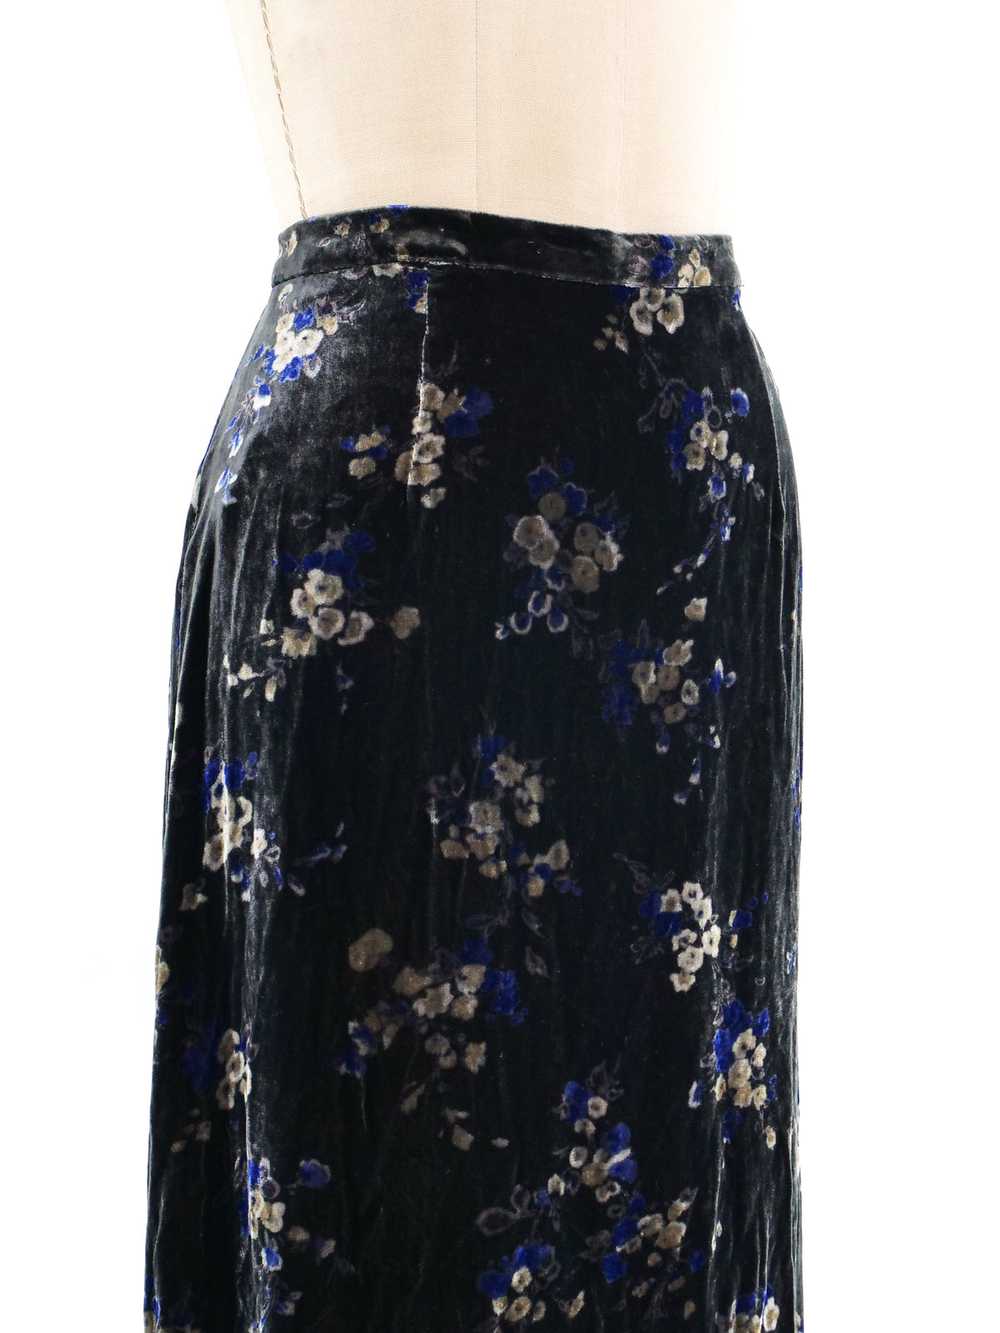 Ungaro Floral Velvet Skirt - image 4